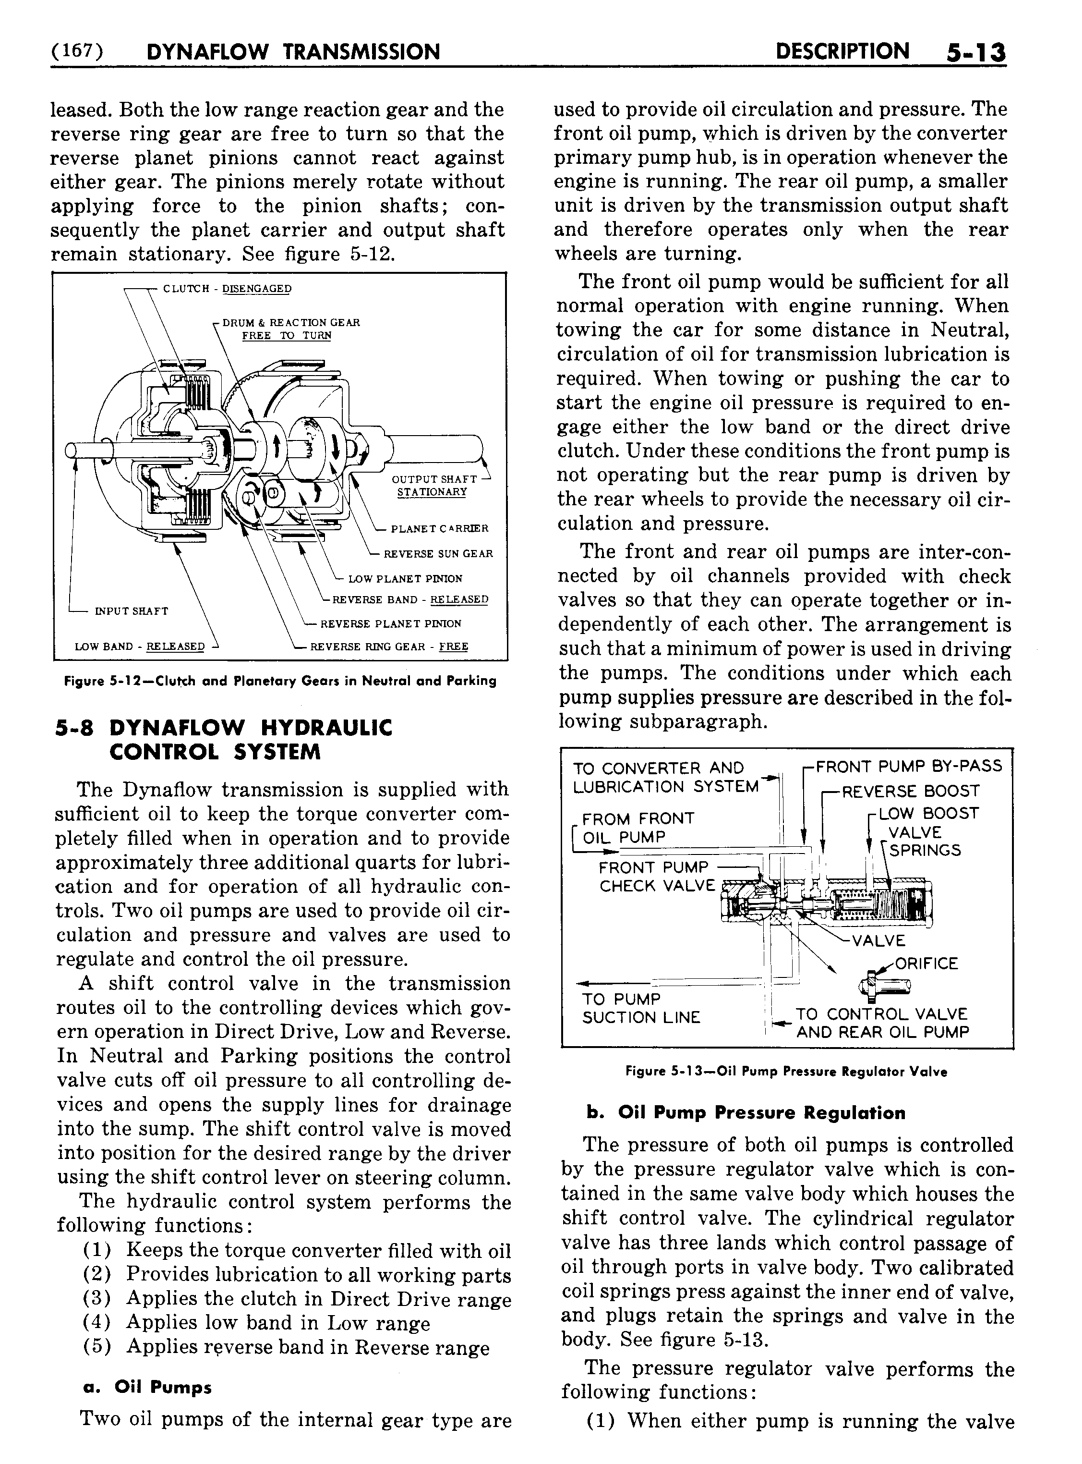 n_06 1954 Buick Shop Manual - Dynaflow-013-013.jpg